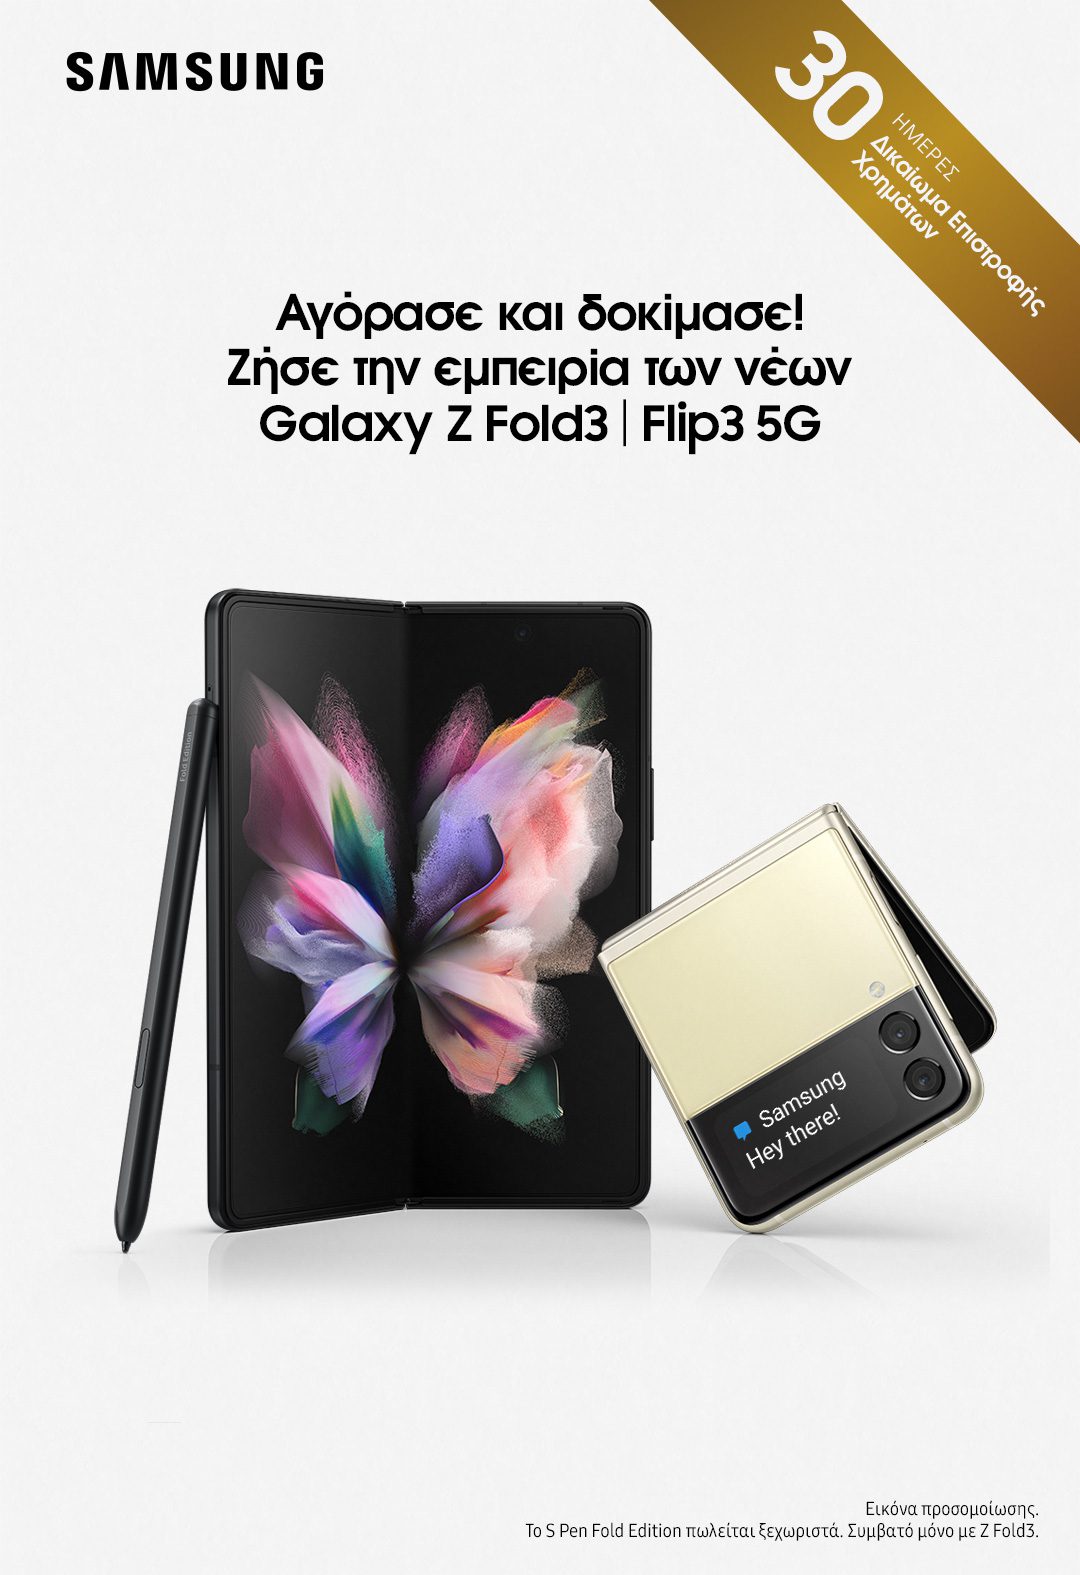 Samsung Zfold3 Flip3 Buytry 1p